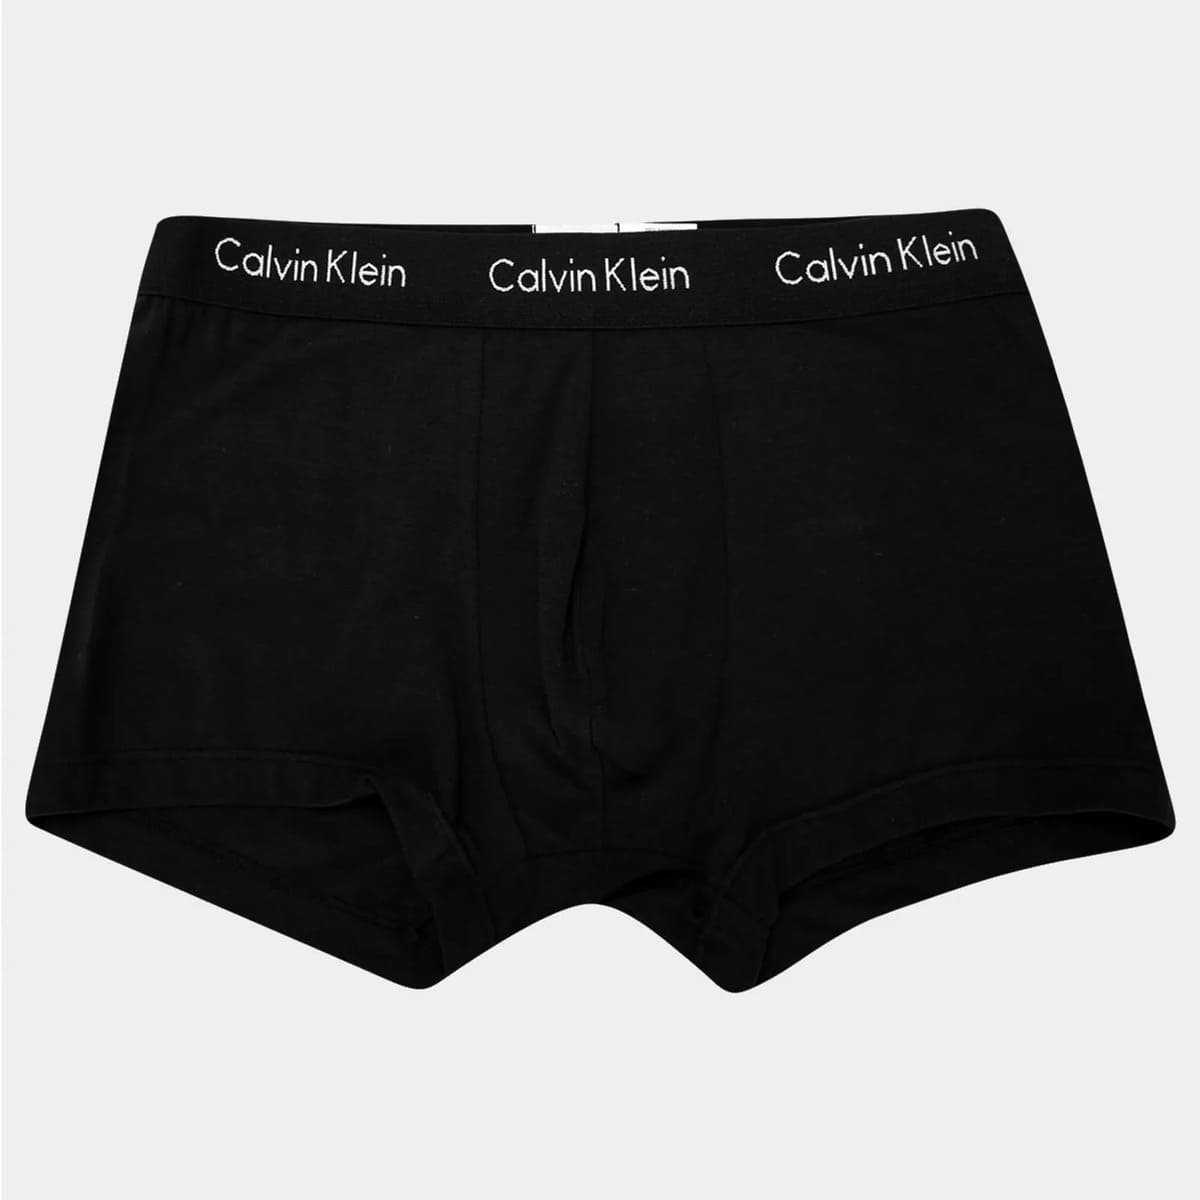 Cueca Calvin Klein Sungão Low Rise Trunk X Preta - Compre Agora